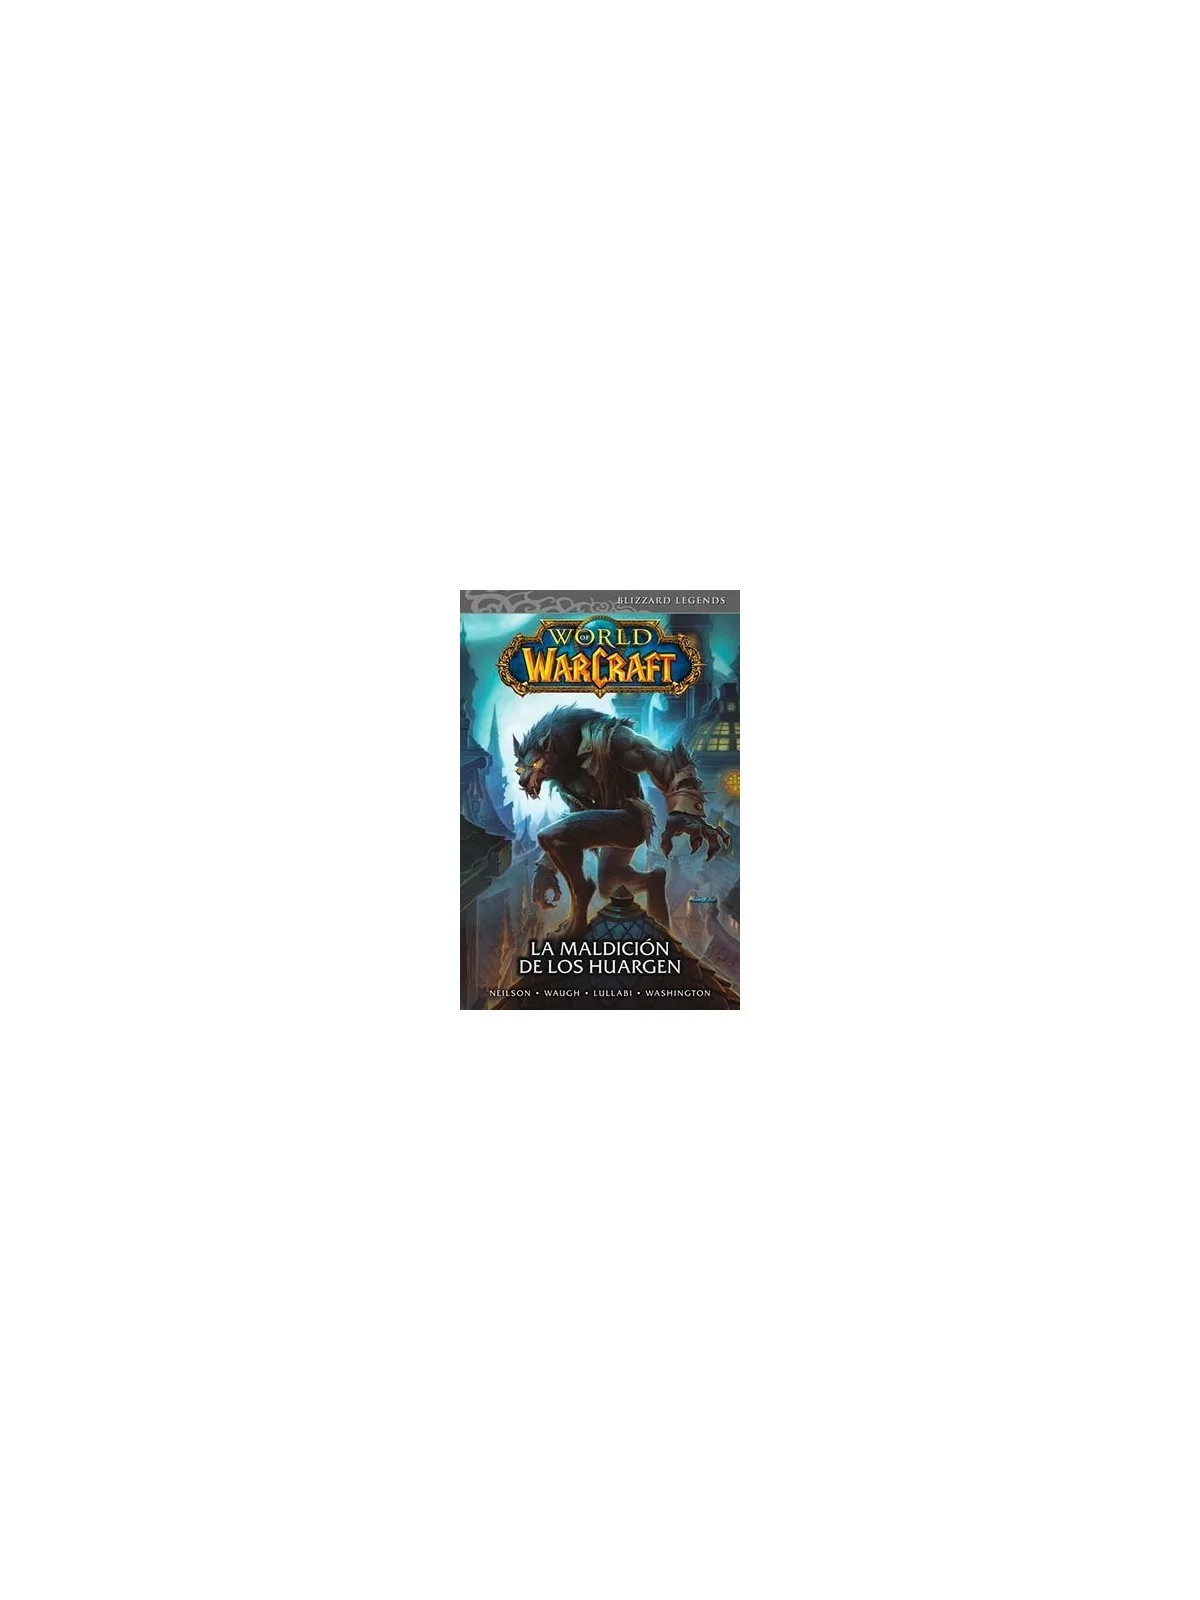 Comprar World of Warcraft 06: La Maldición de los Huargen barato al me